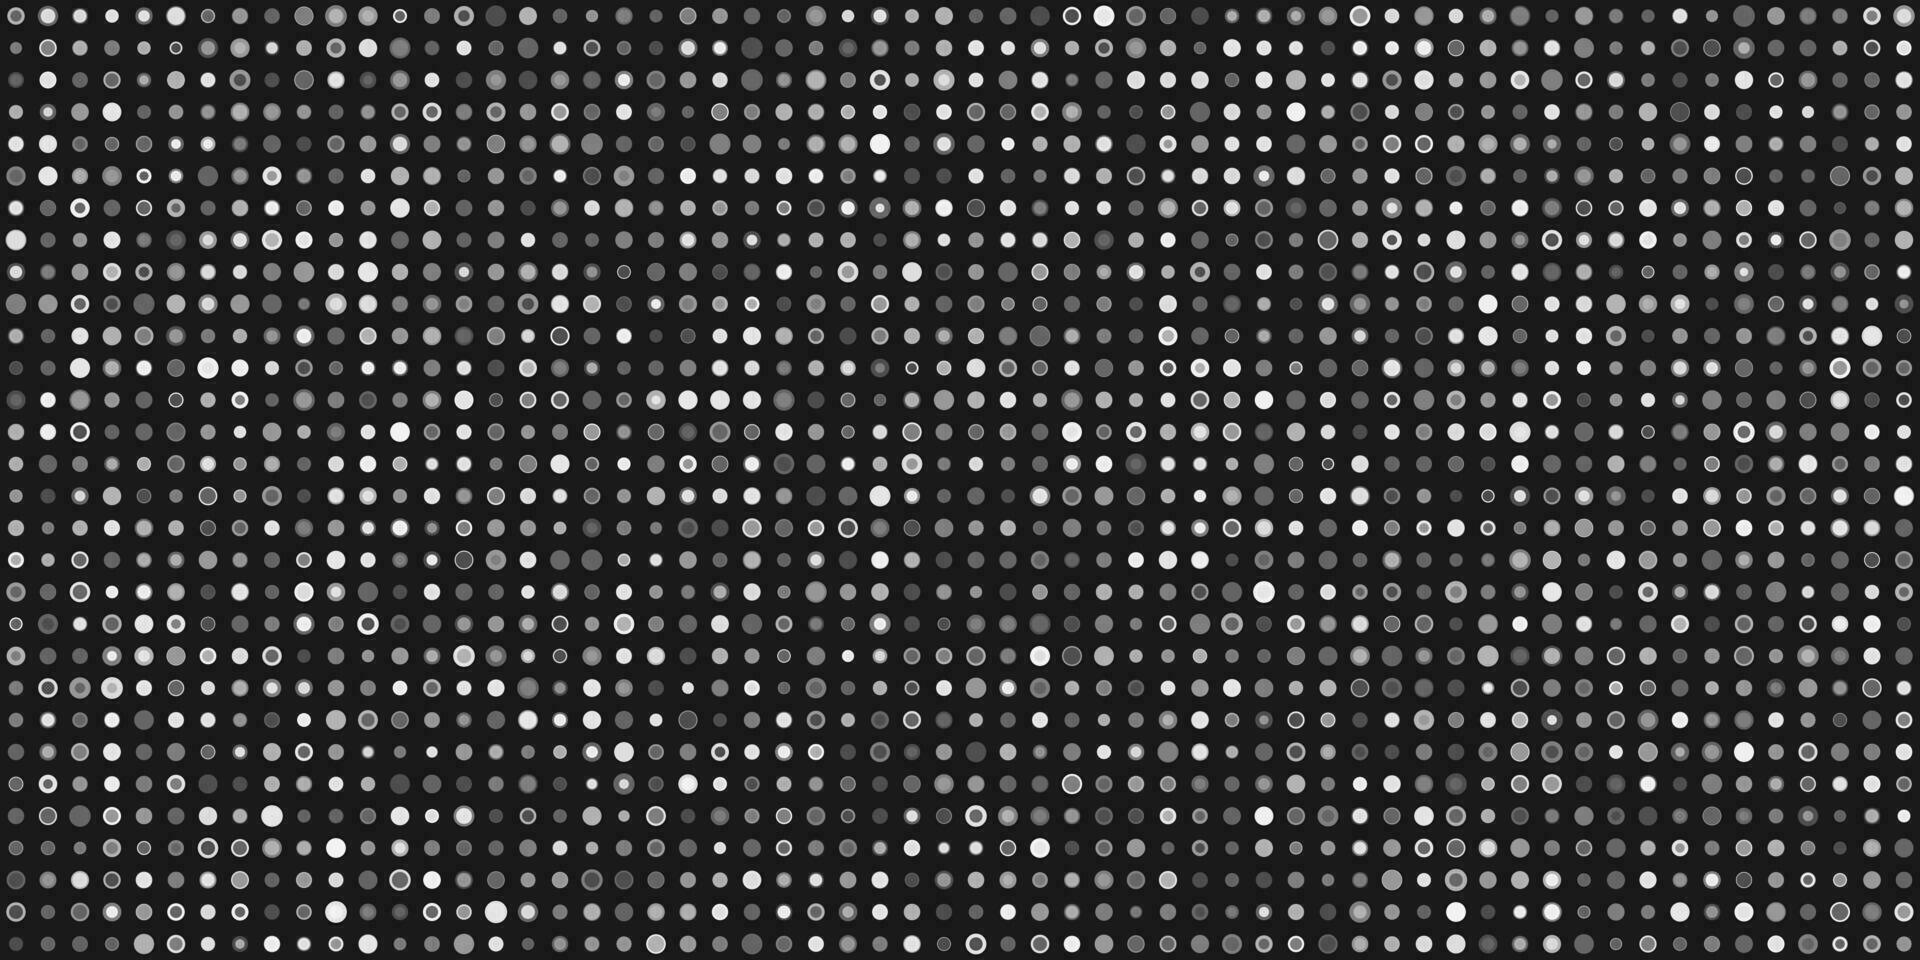 svart och vit hand dragen prickar abstrakt bakgrund vektor